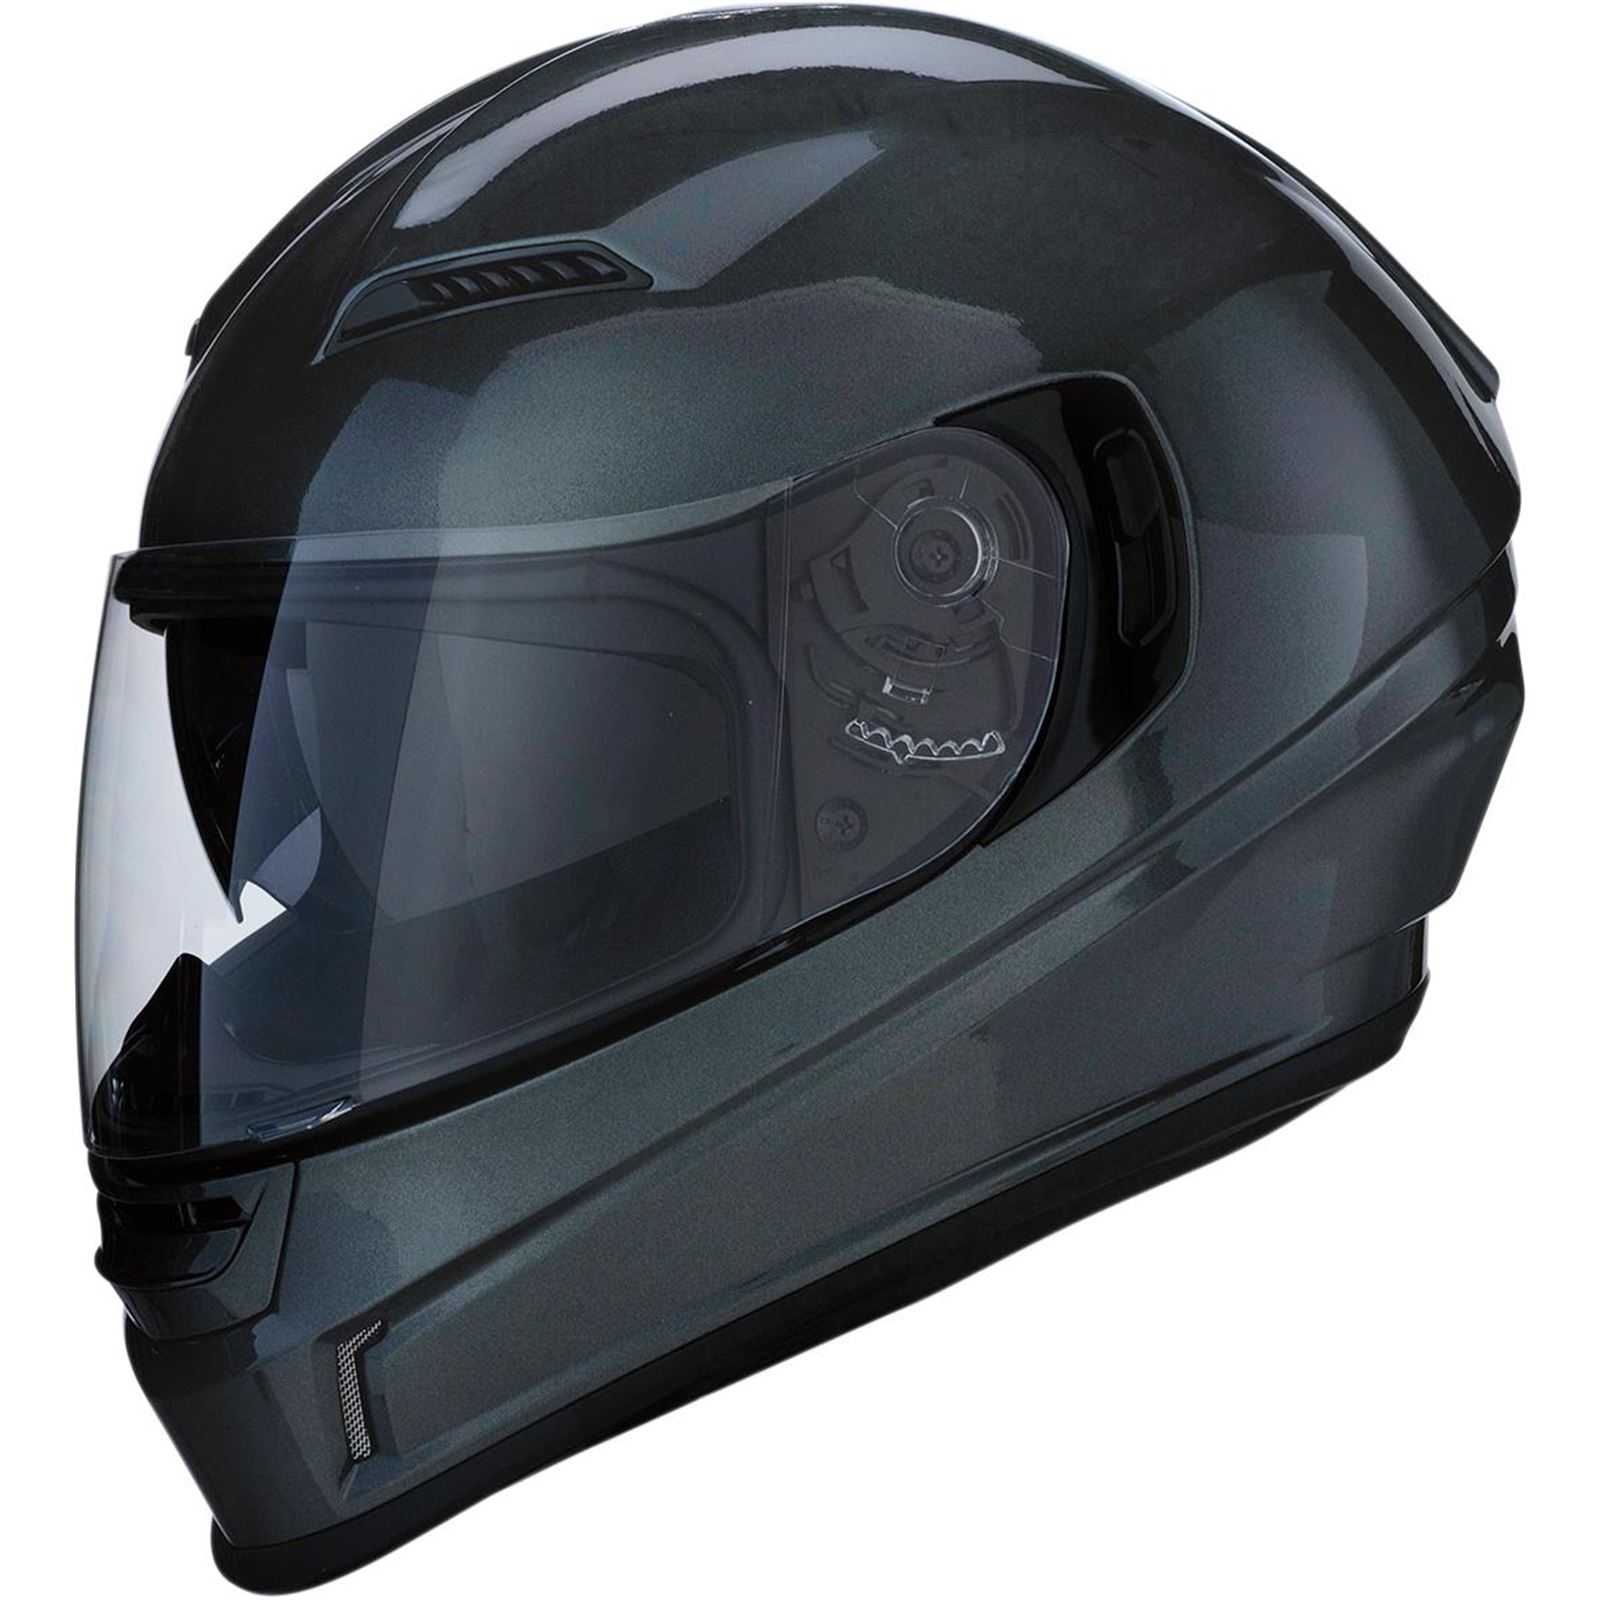 Z1R Jackal Solid Helmet